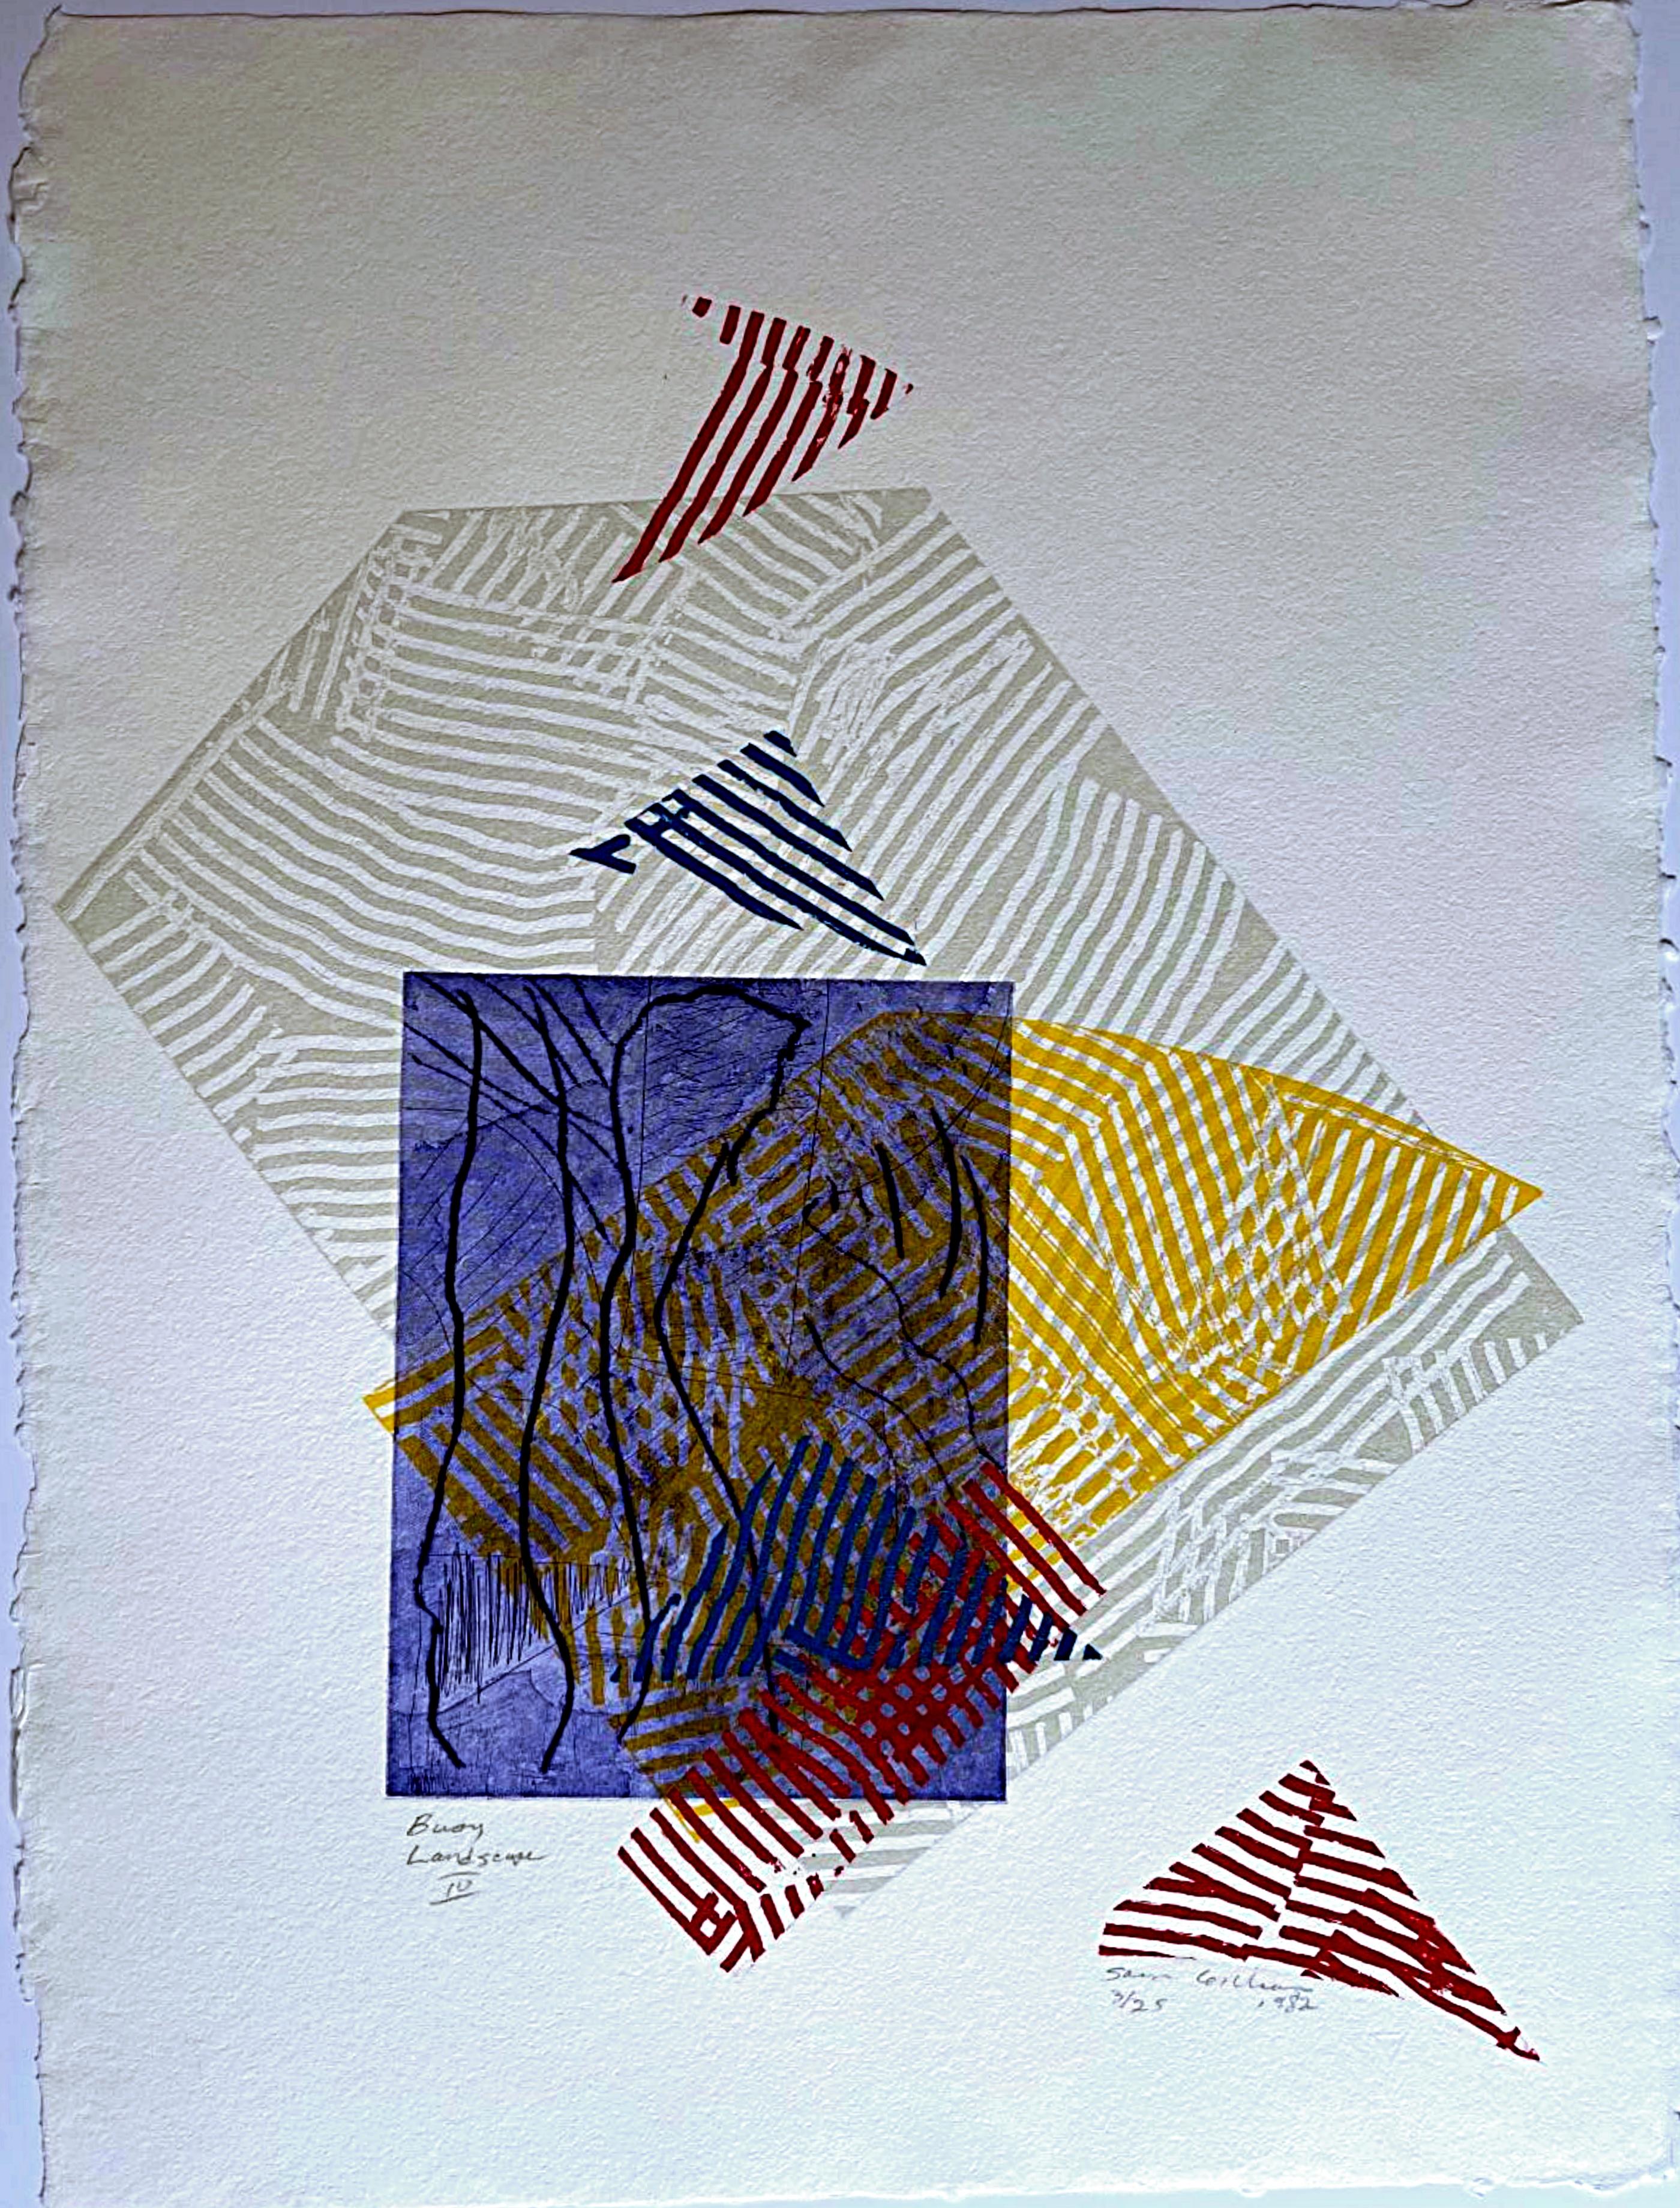 Abstract Print Sam Gilliam - Buoy Landscape IV, technique mixte signée/n édition limitée impression en relief Ab Ex 